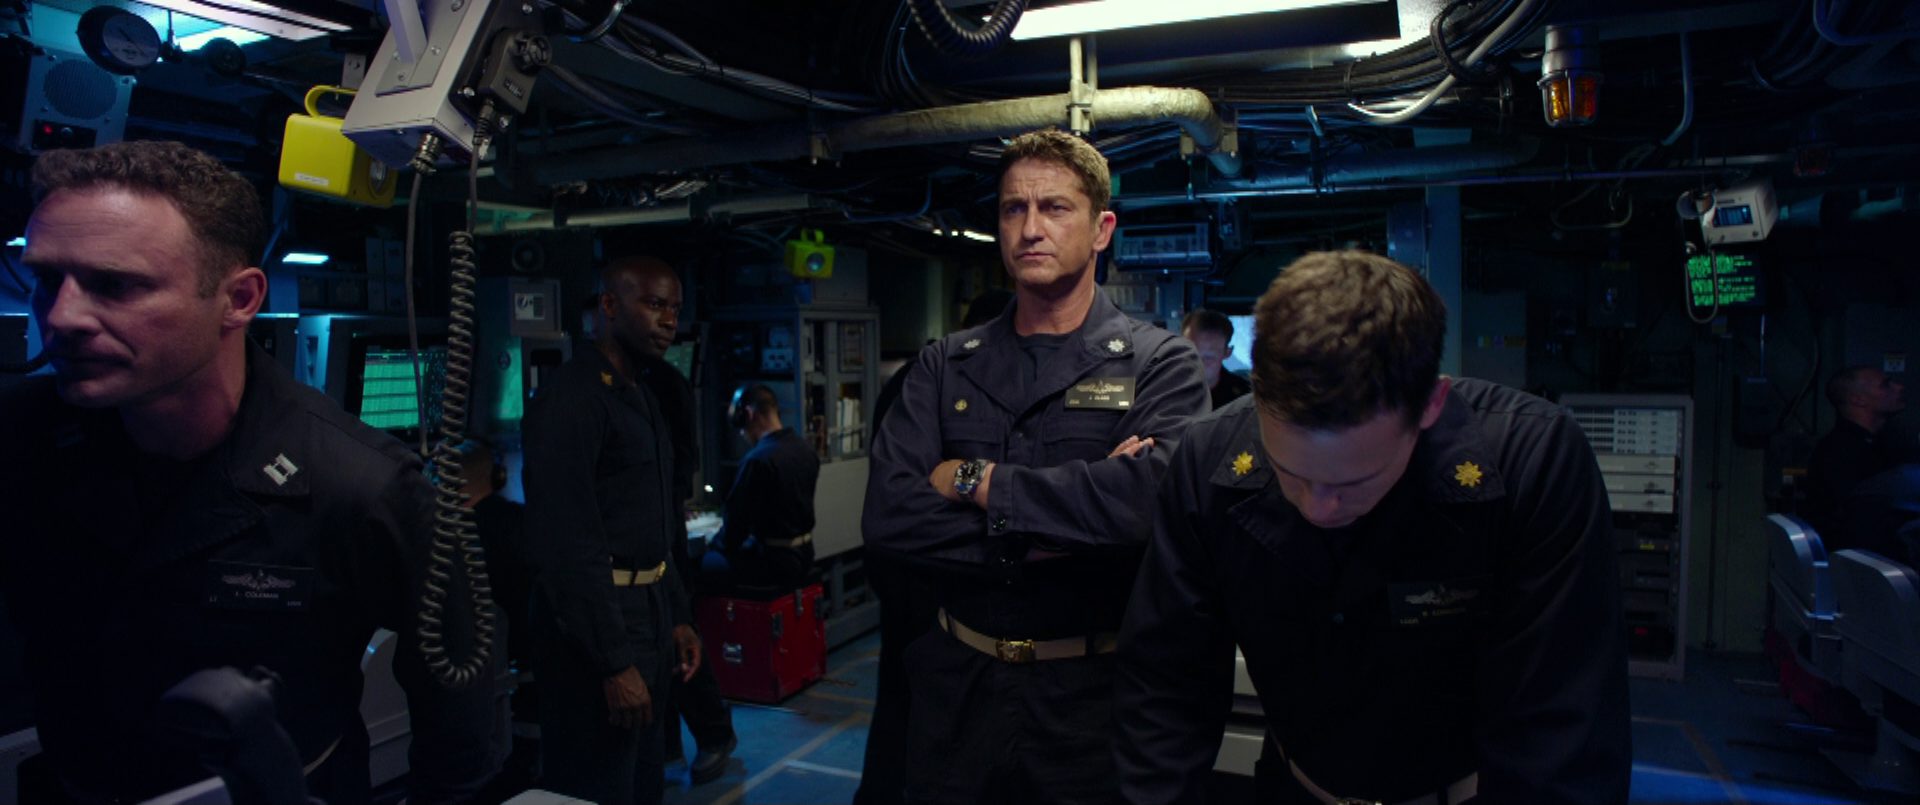 Gerard Butler als Kommandant eines U-Bootes der US Navy mit verschränkten Armen und konzentriert-entschlossenem Blick in der spärlich beleuchteten Zentrale im Beisein einiger seiner Seemänner.